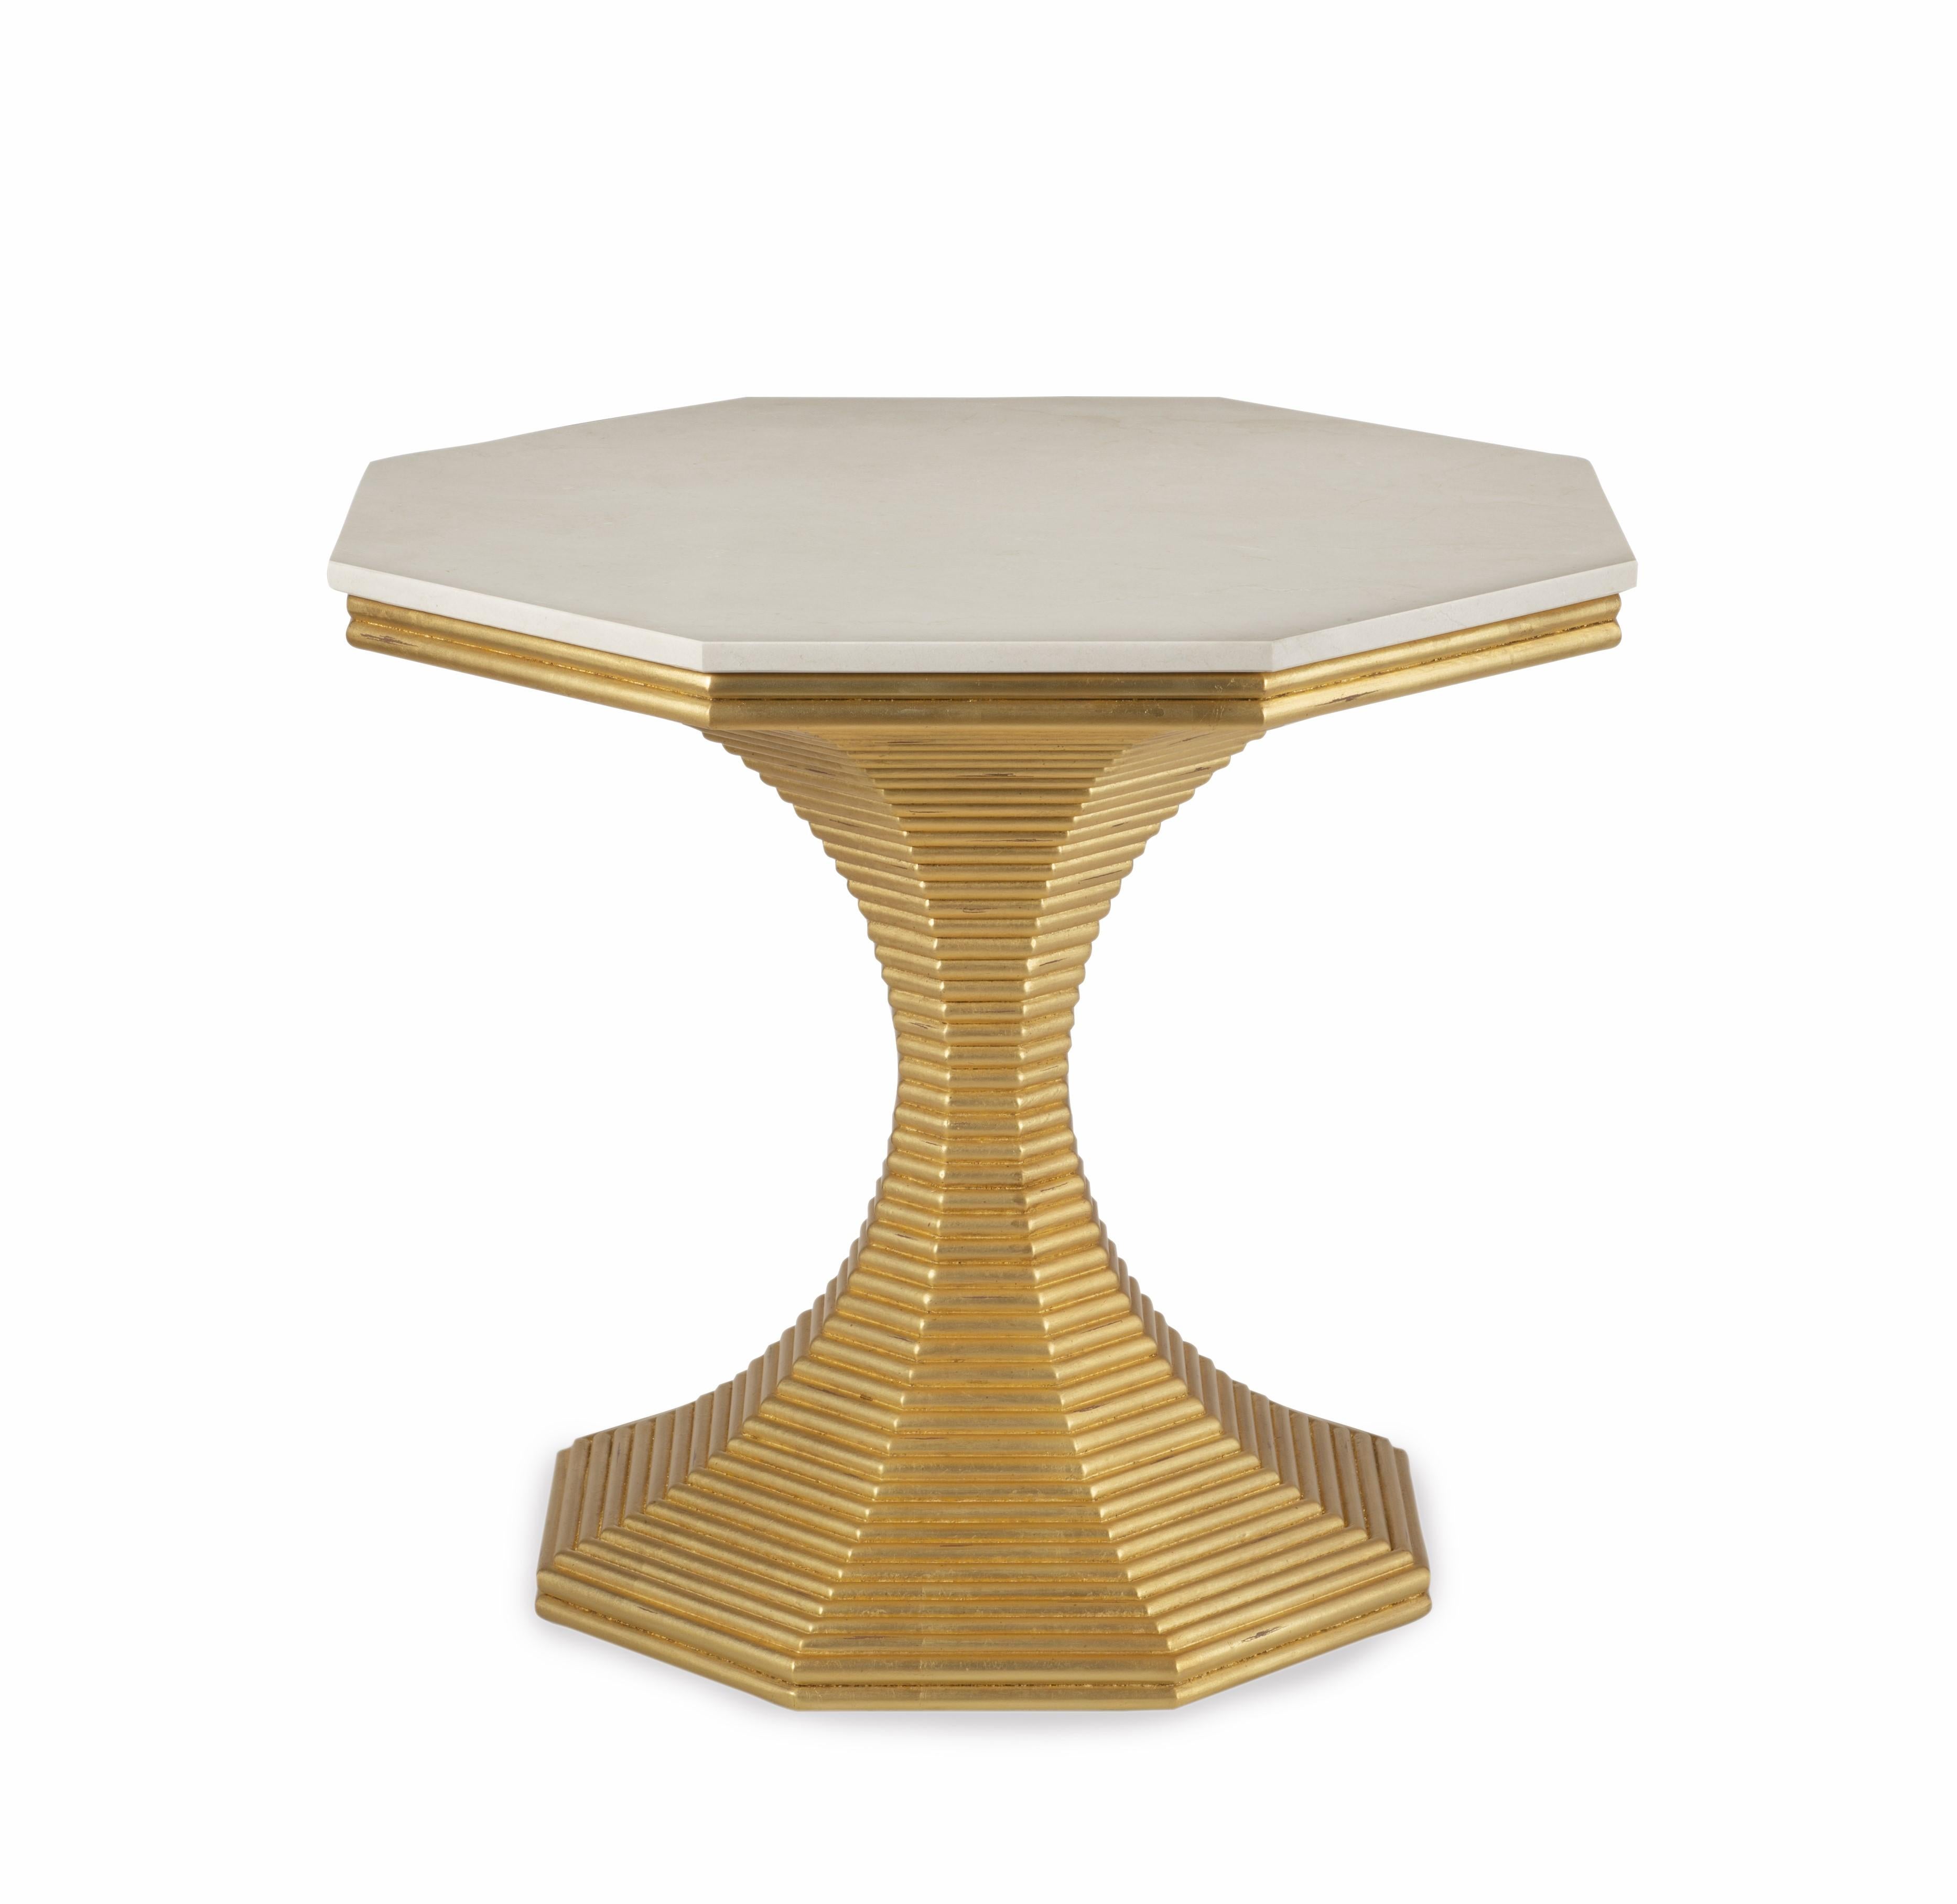 Die Steinplatte des Hourglass Table ist aus Crema Marfil-Marmor gefertigt, einem Material mit einzigartigen und schönen Variationen. Es ist bekannt für seine schöne cremefarbene Farbe mit hellbraunen Untertönen sowie für seine zarte Äderung und